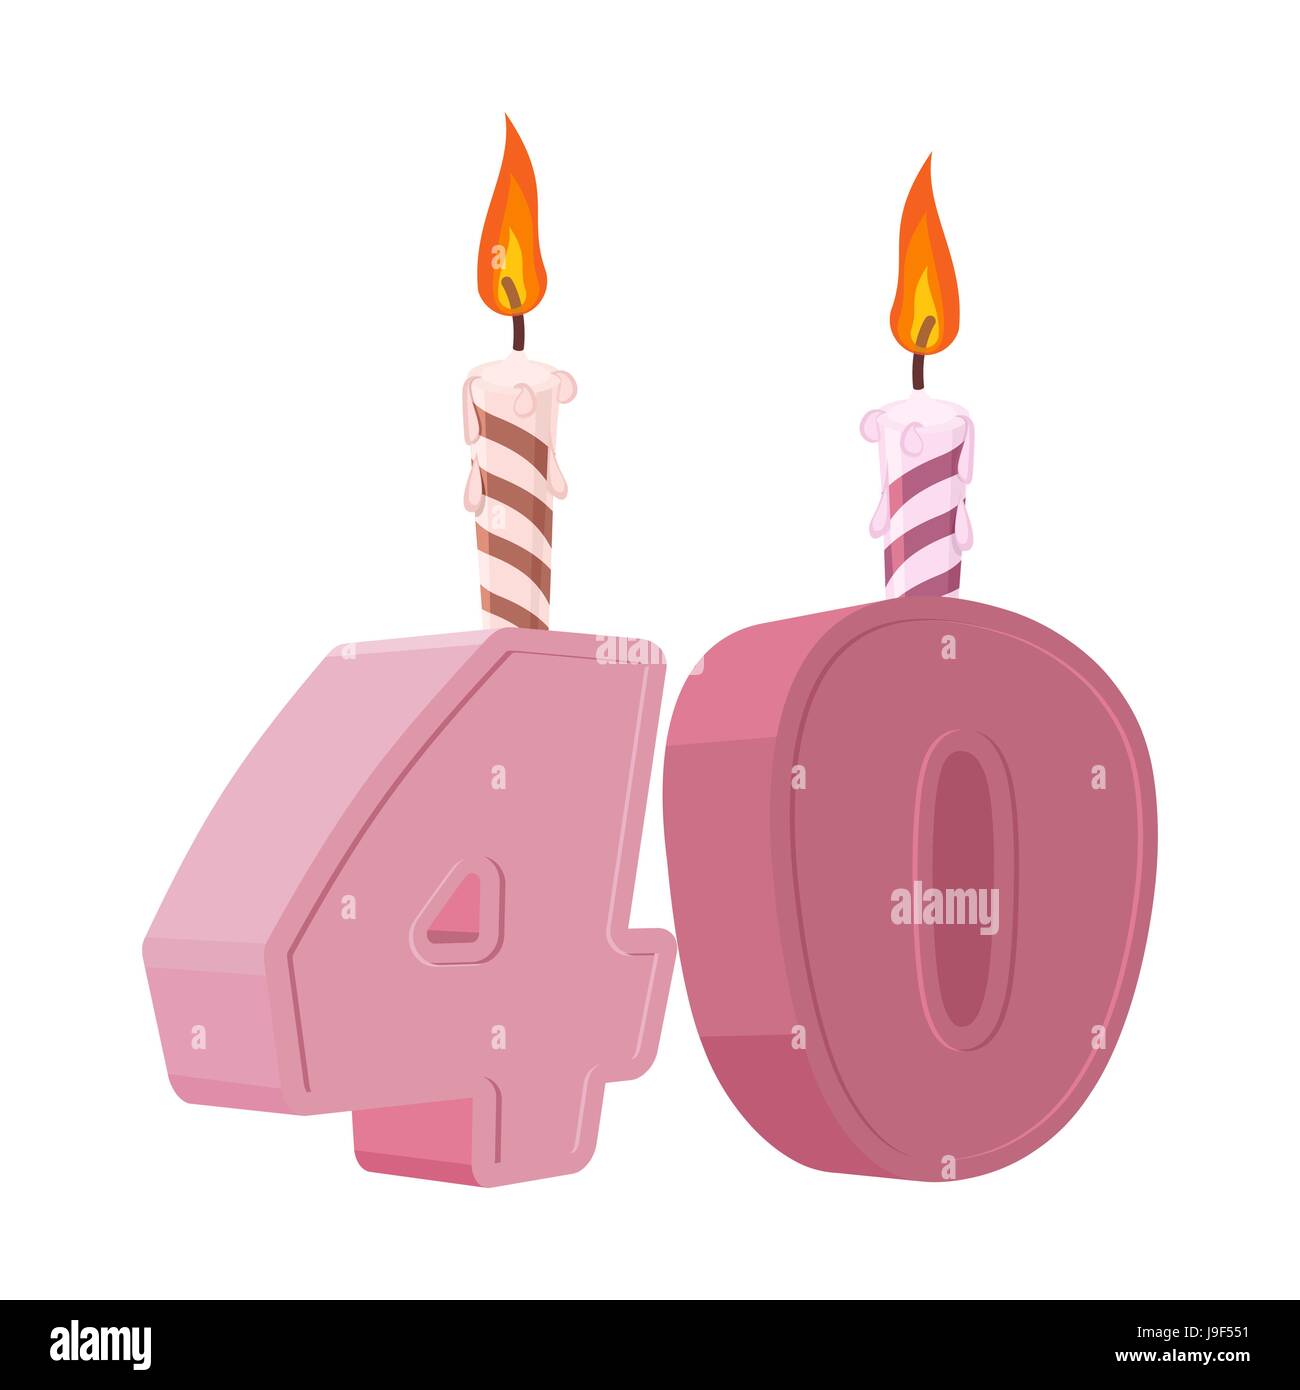 12 Kerzen & Halter SET-Geburtstag Jubiläums Kerze 40 